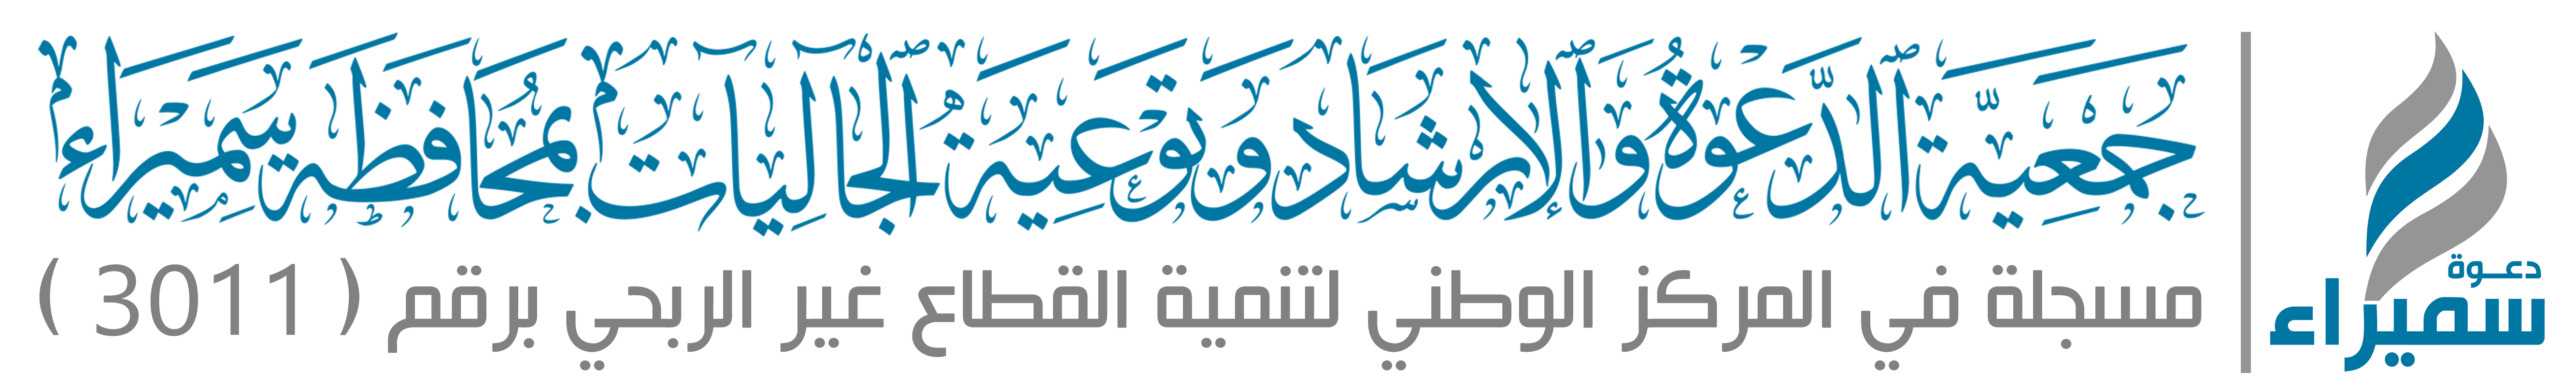 جمعية الدعوة والإرشاد وتوعية الجاليات بمحافظة سميراء